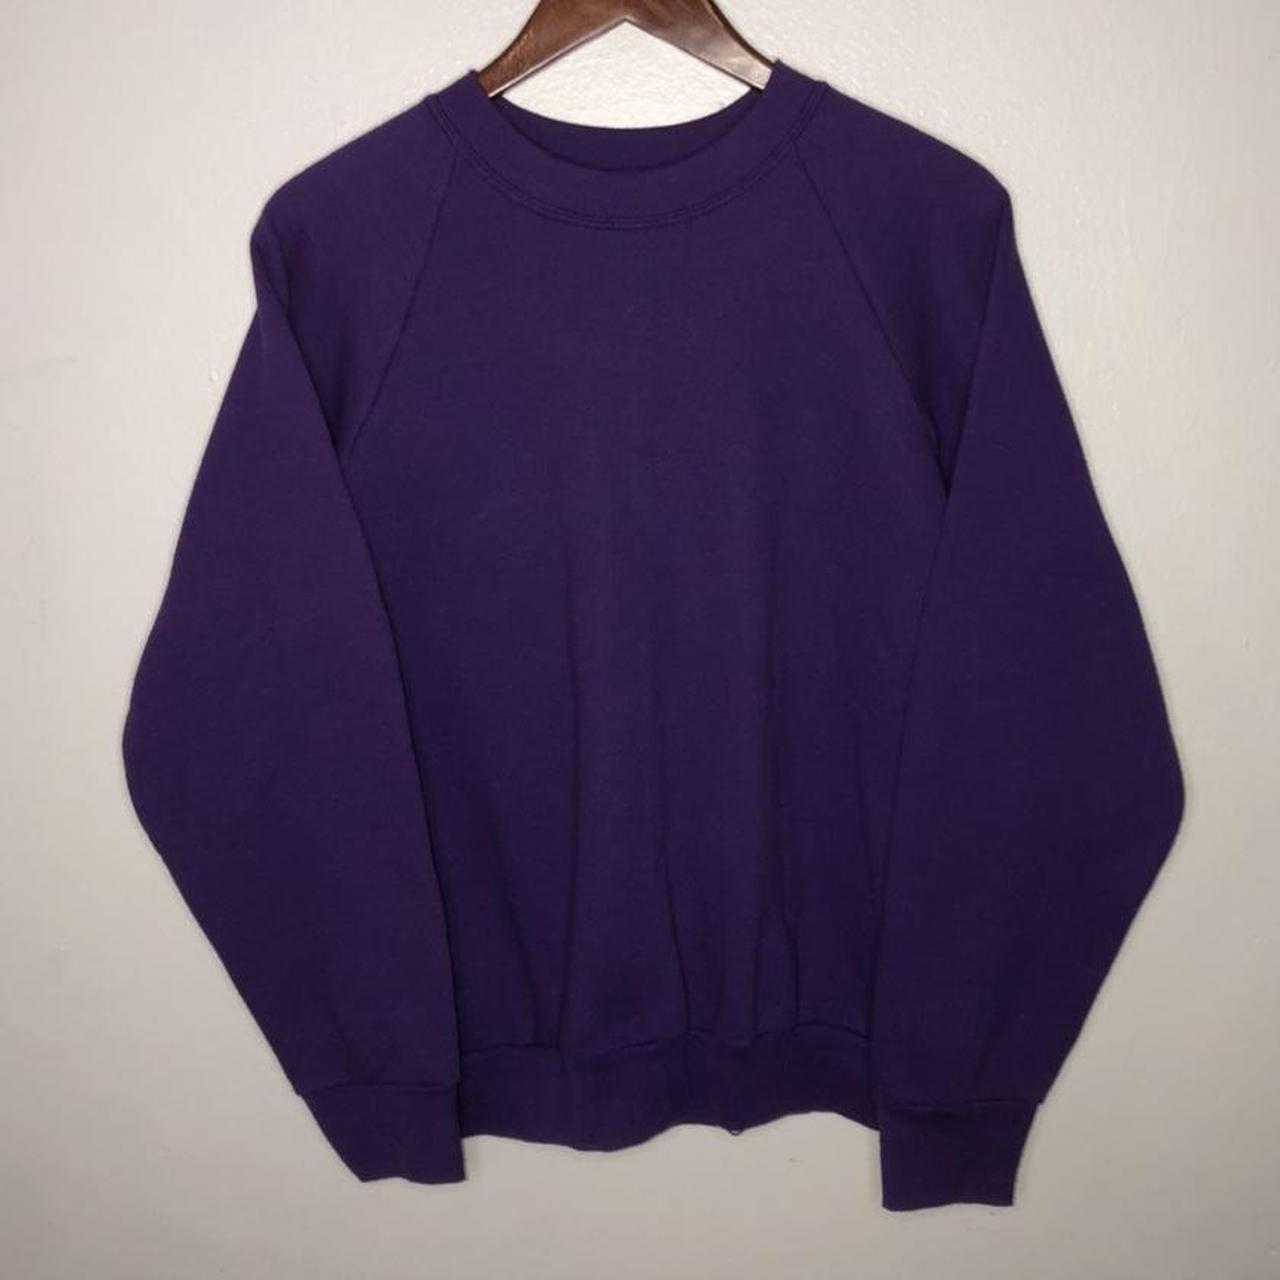 vintage 90’s purple blank sweater •size:... - Depop